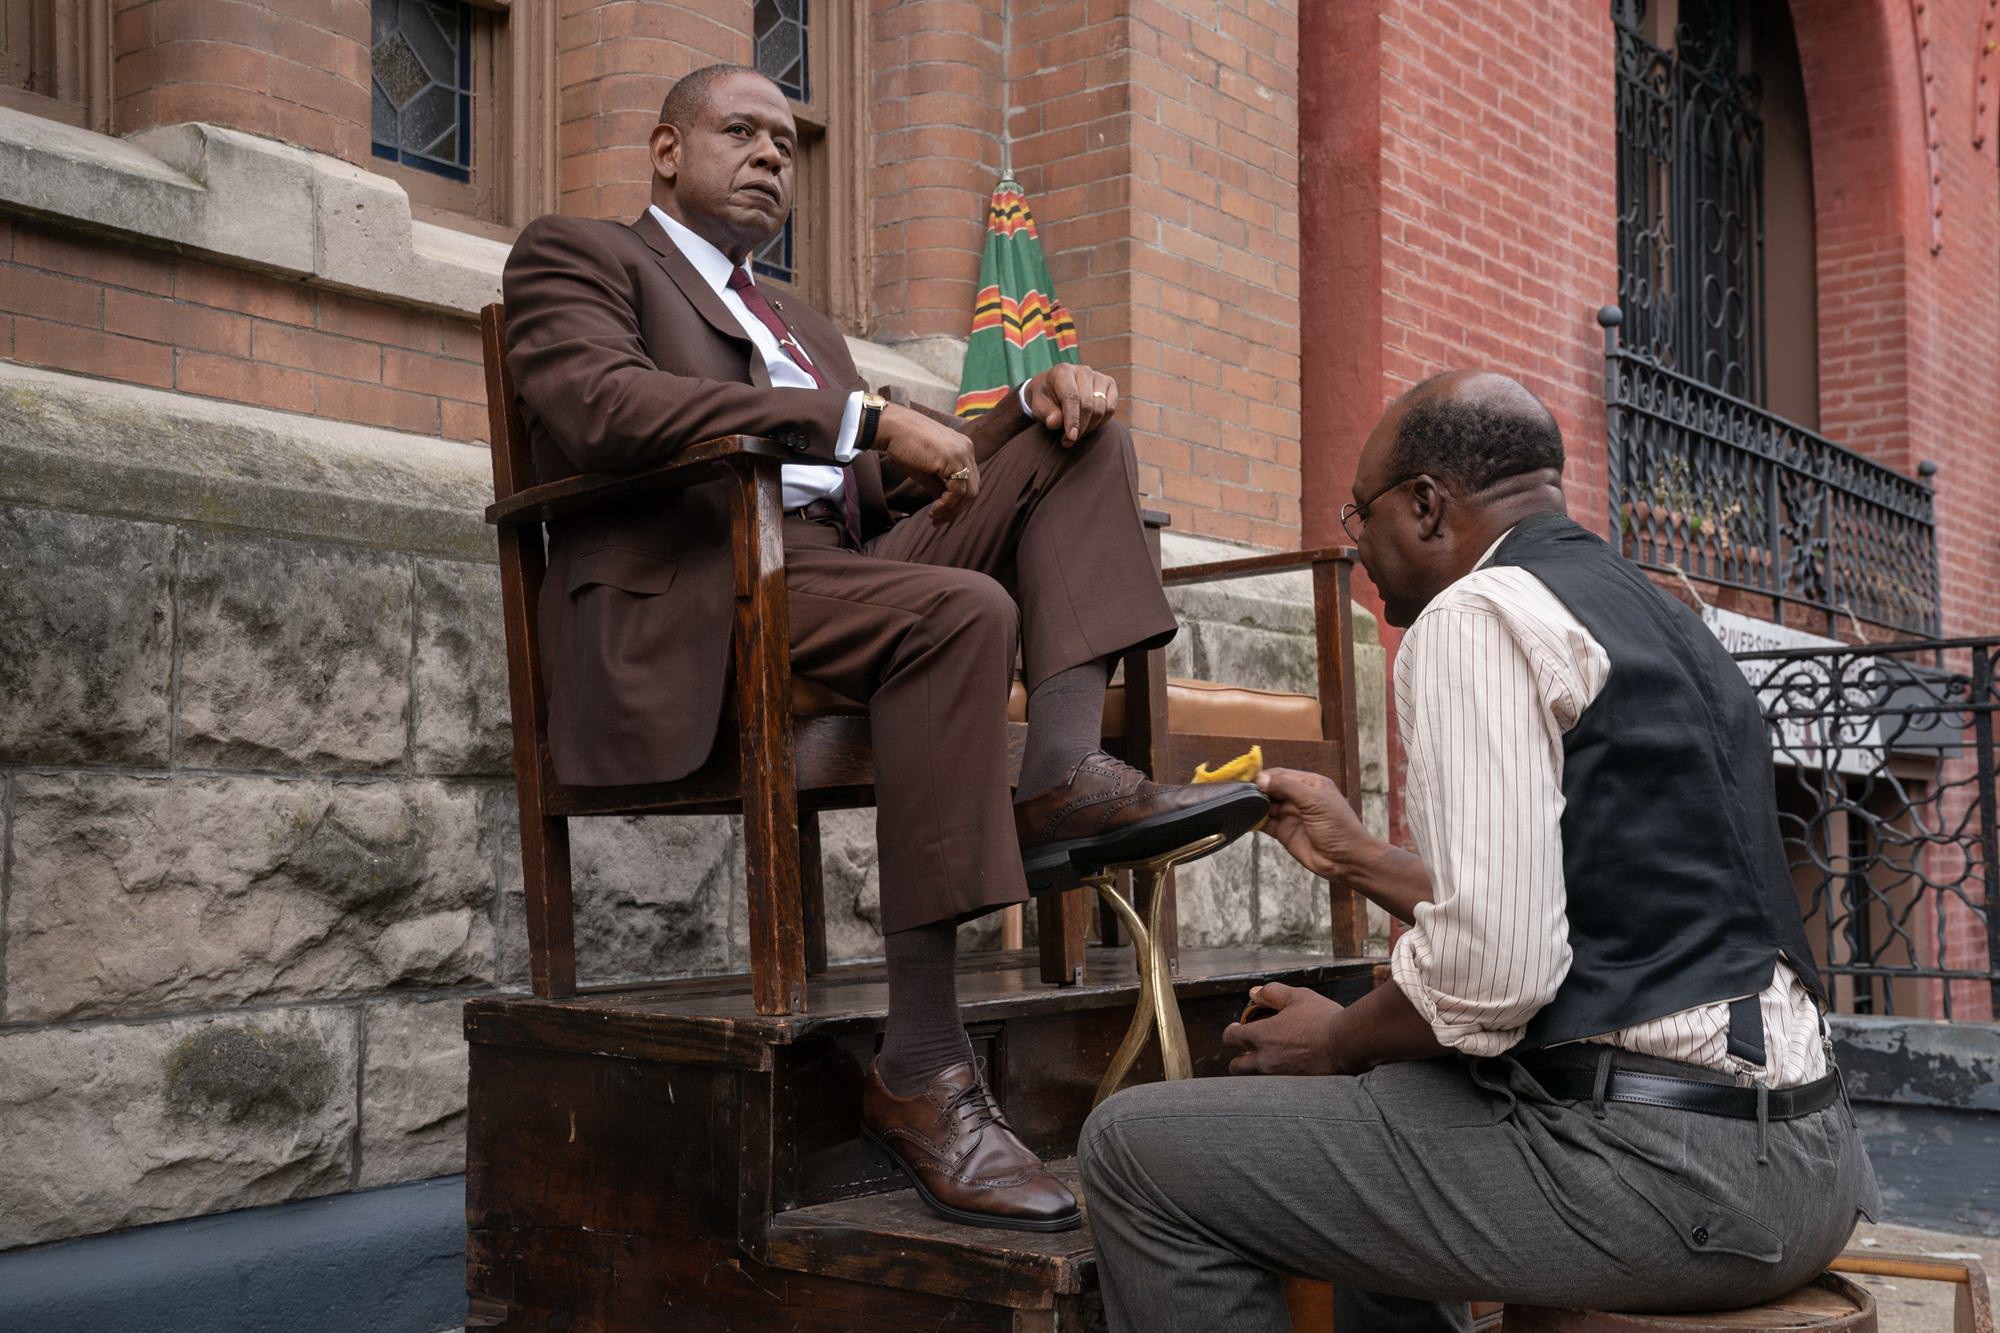 Кадры из фильма "Крестный отец Гарлема (Godfather of Harlem) (2019)&qu...